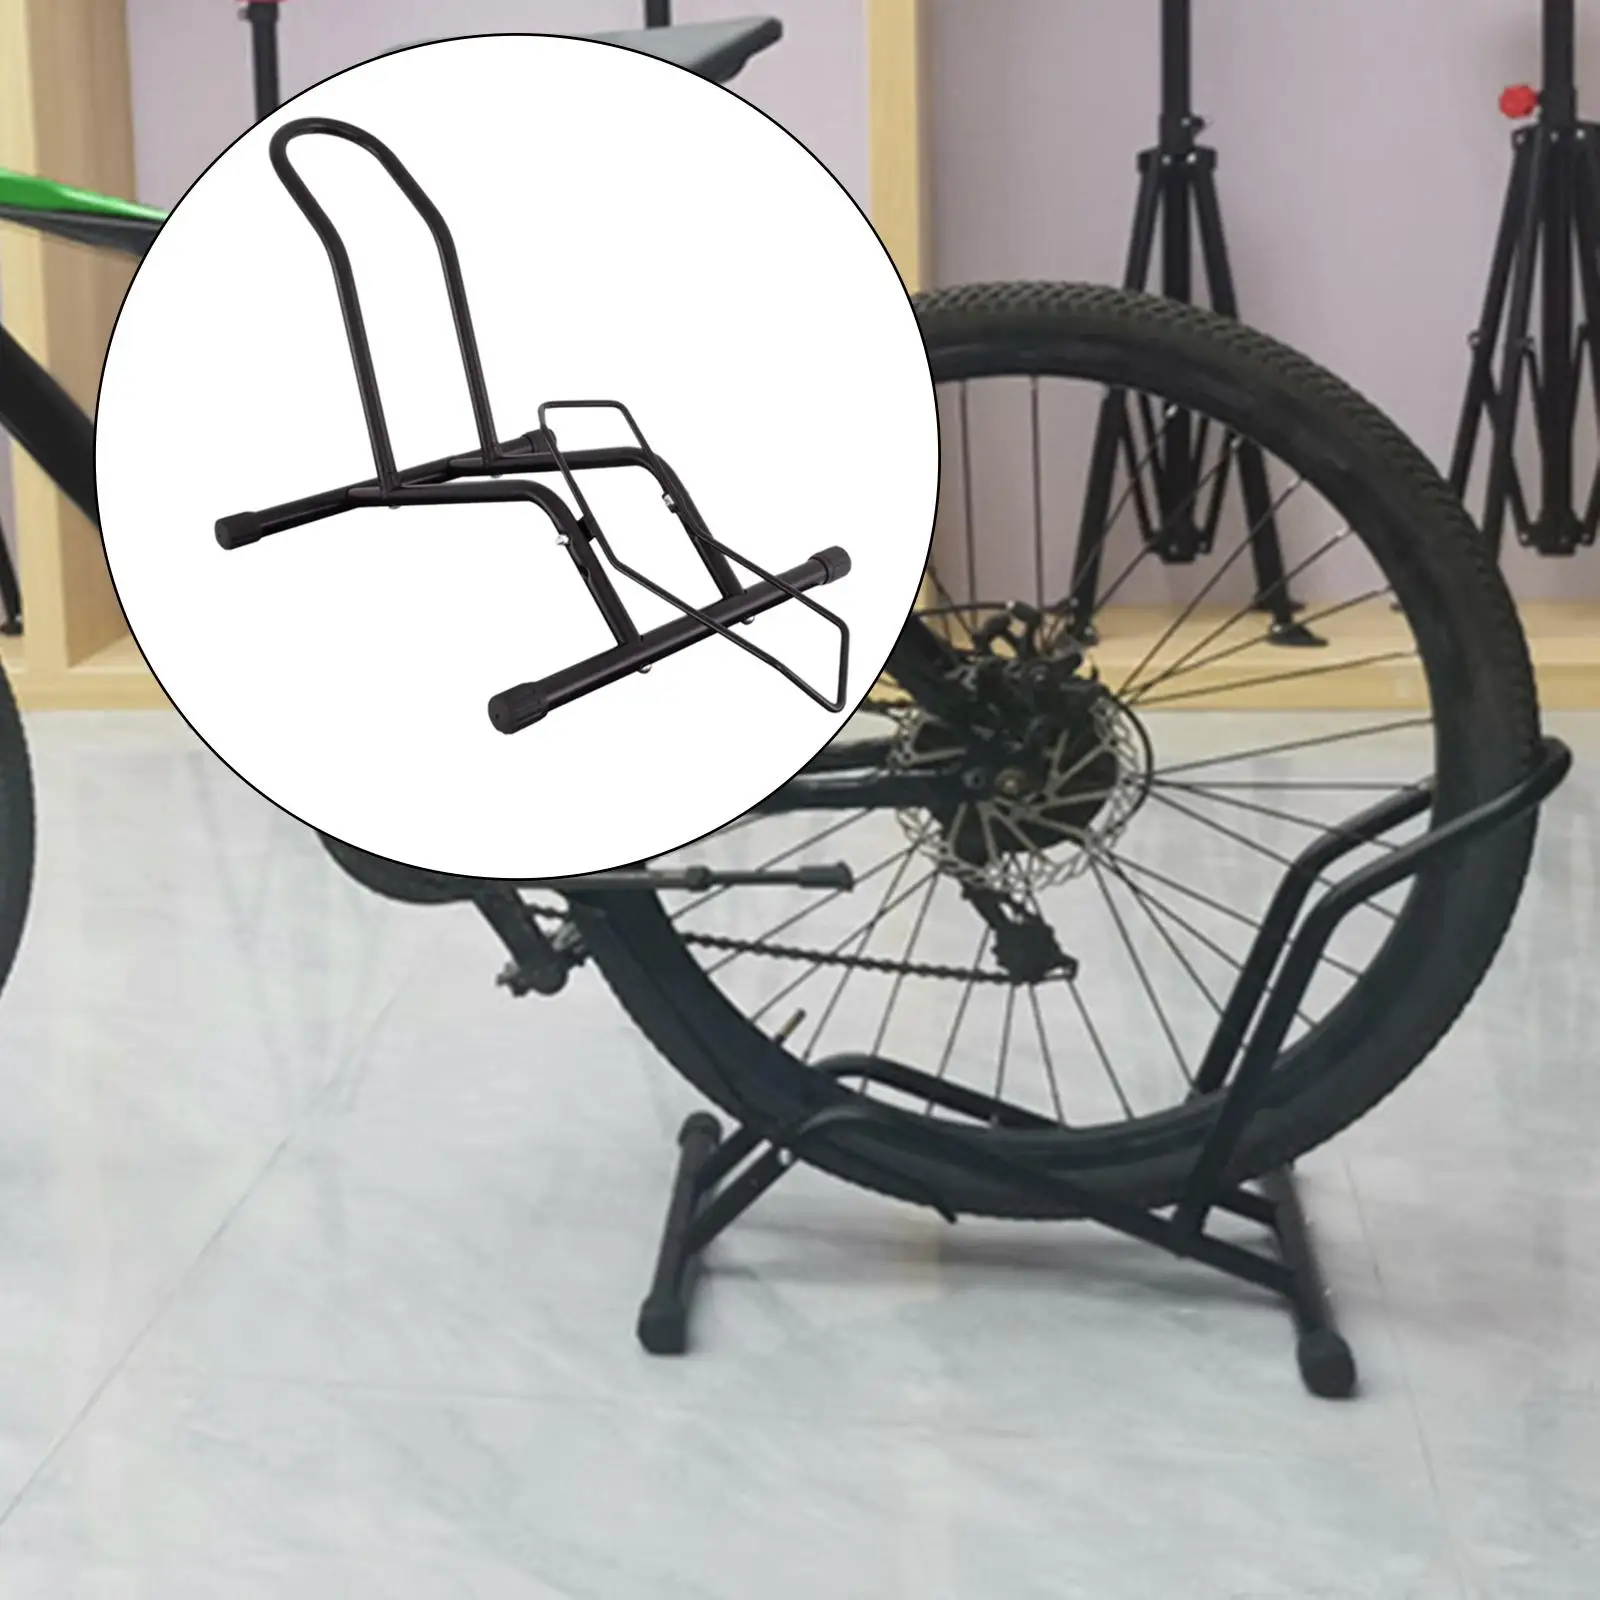 Mountain  Floor Parking Rack Display Stand Bike for Indoor Outdoor